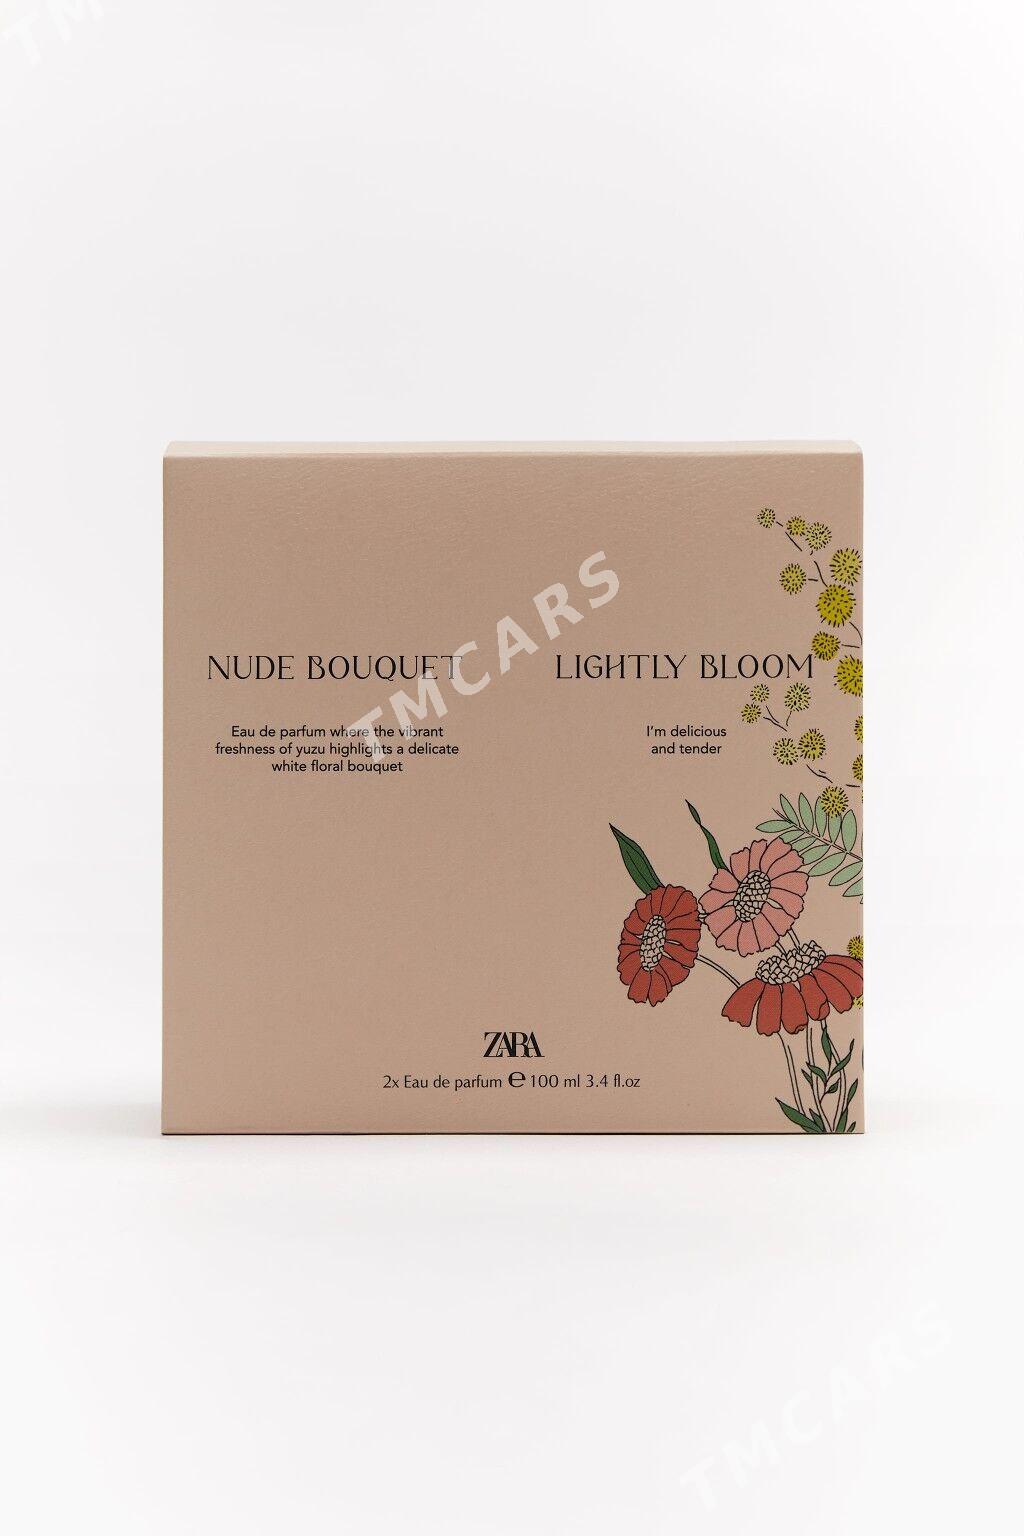 Zara Nude Bouquet & Ligtly Blo - 30 mkr - img 3